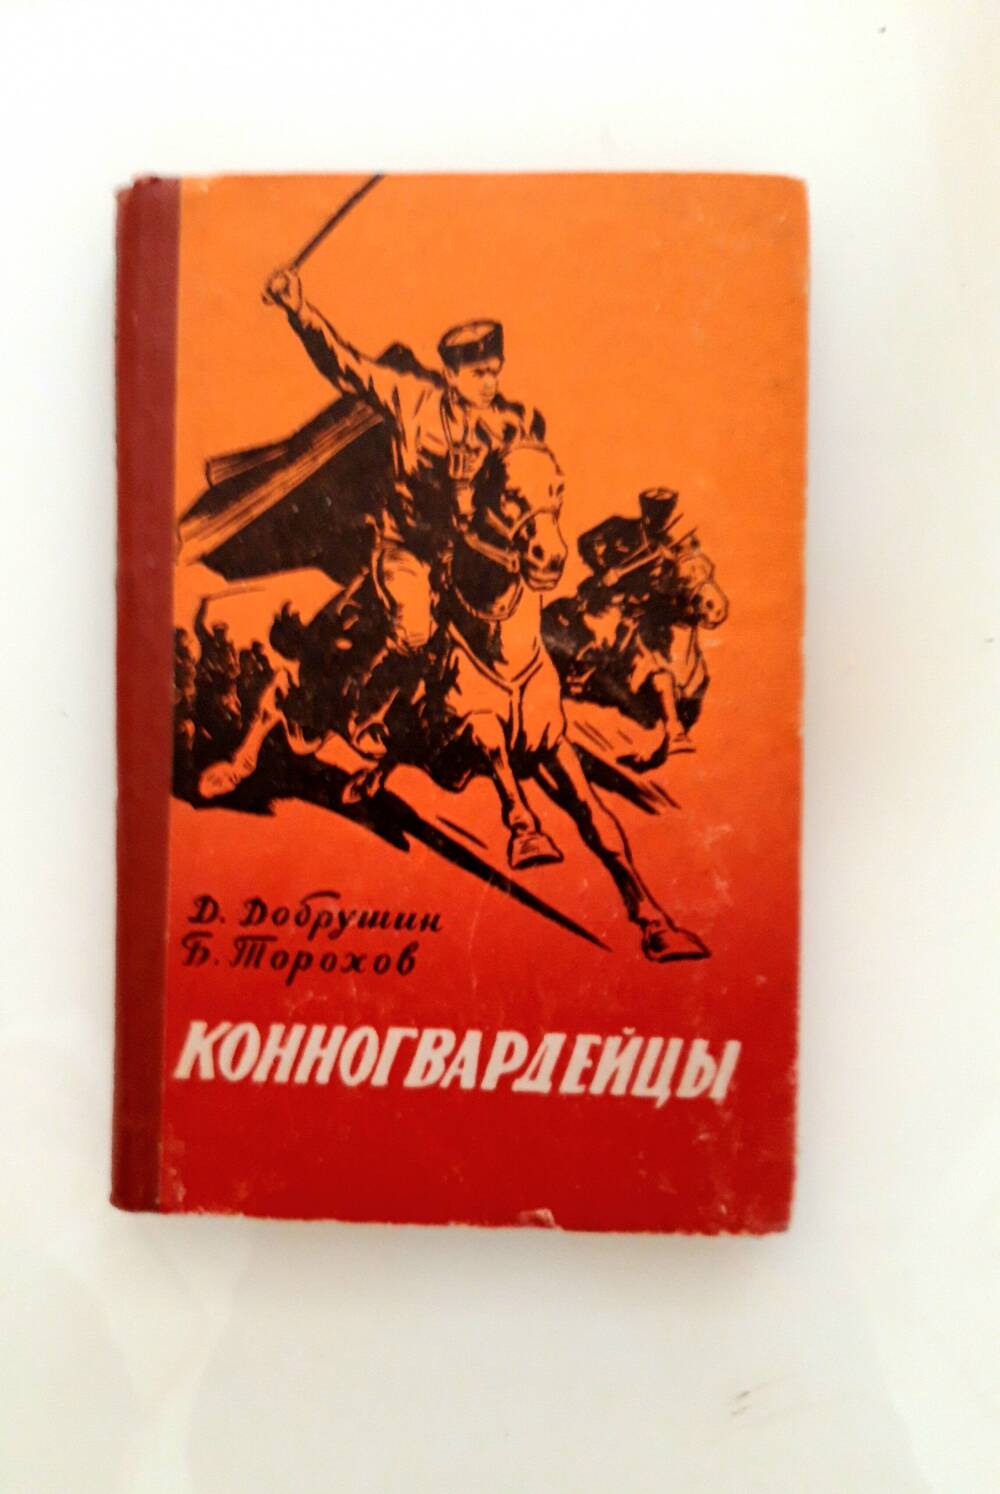 Книга Добрушина Д. С. «Конногвардейцы».   Г. Волгоград, 1963